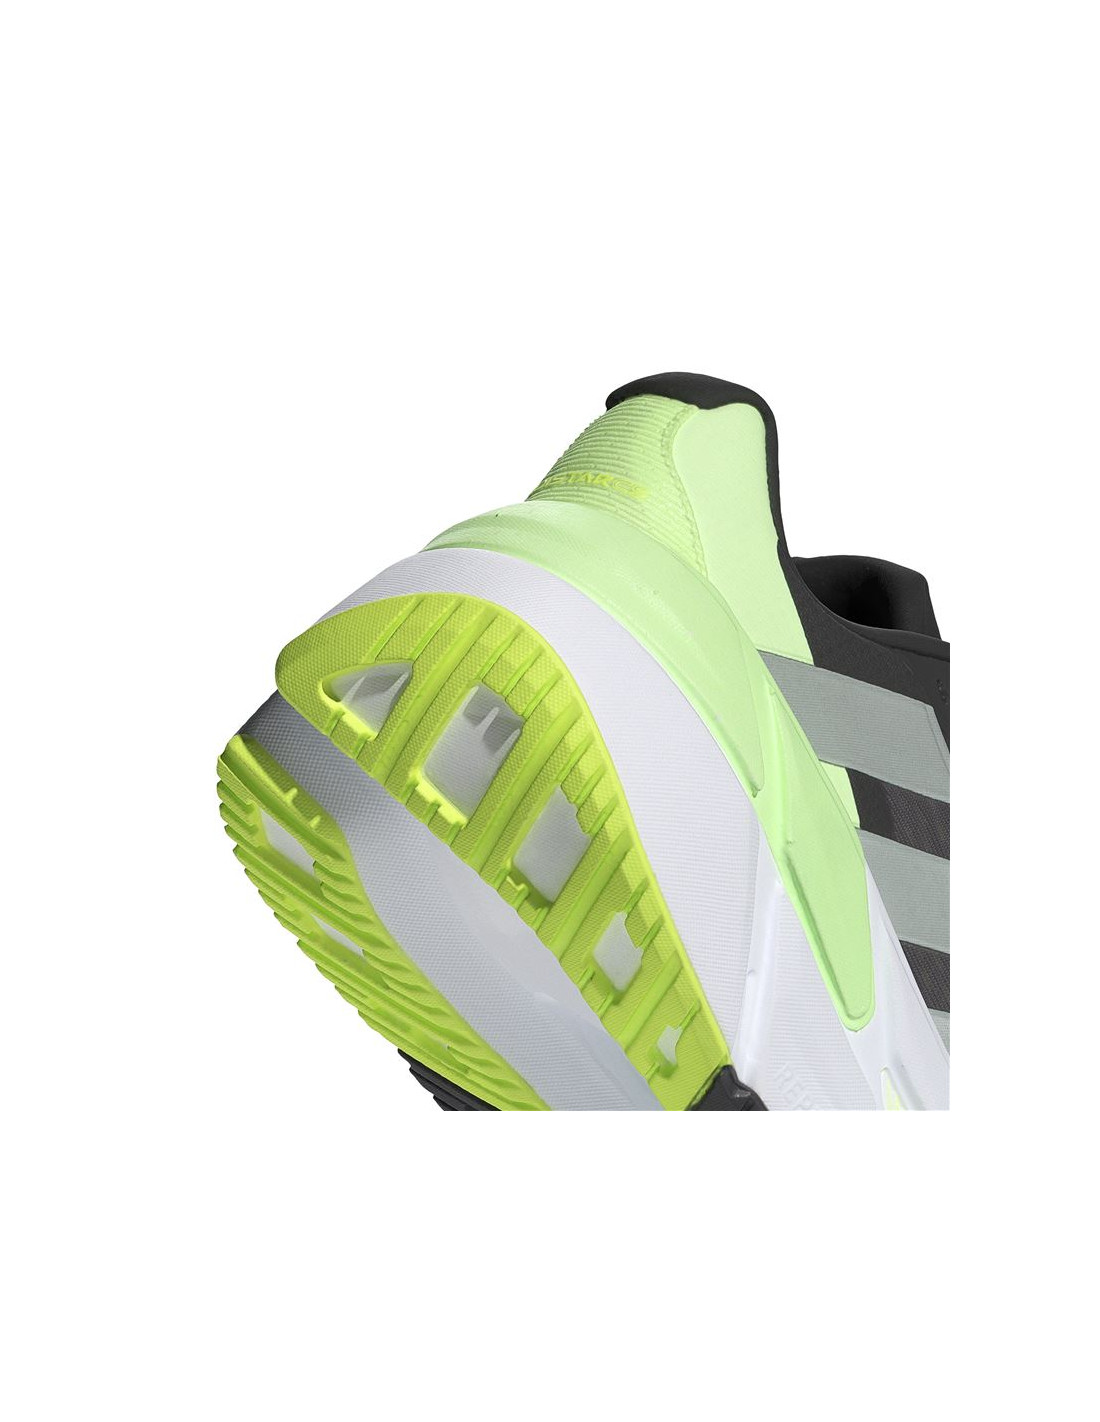 Chaussures de running Adistar CS Homme Adidas